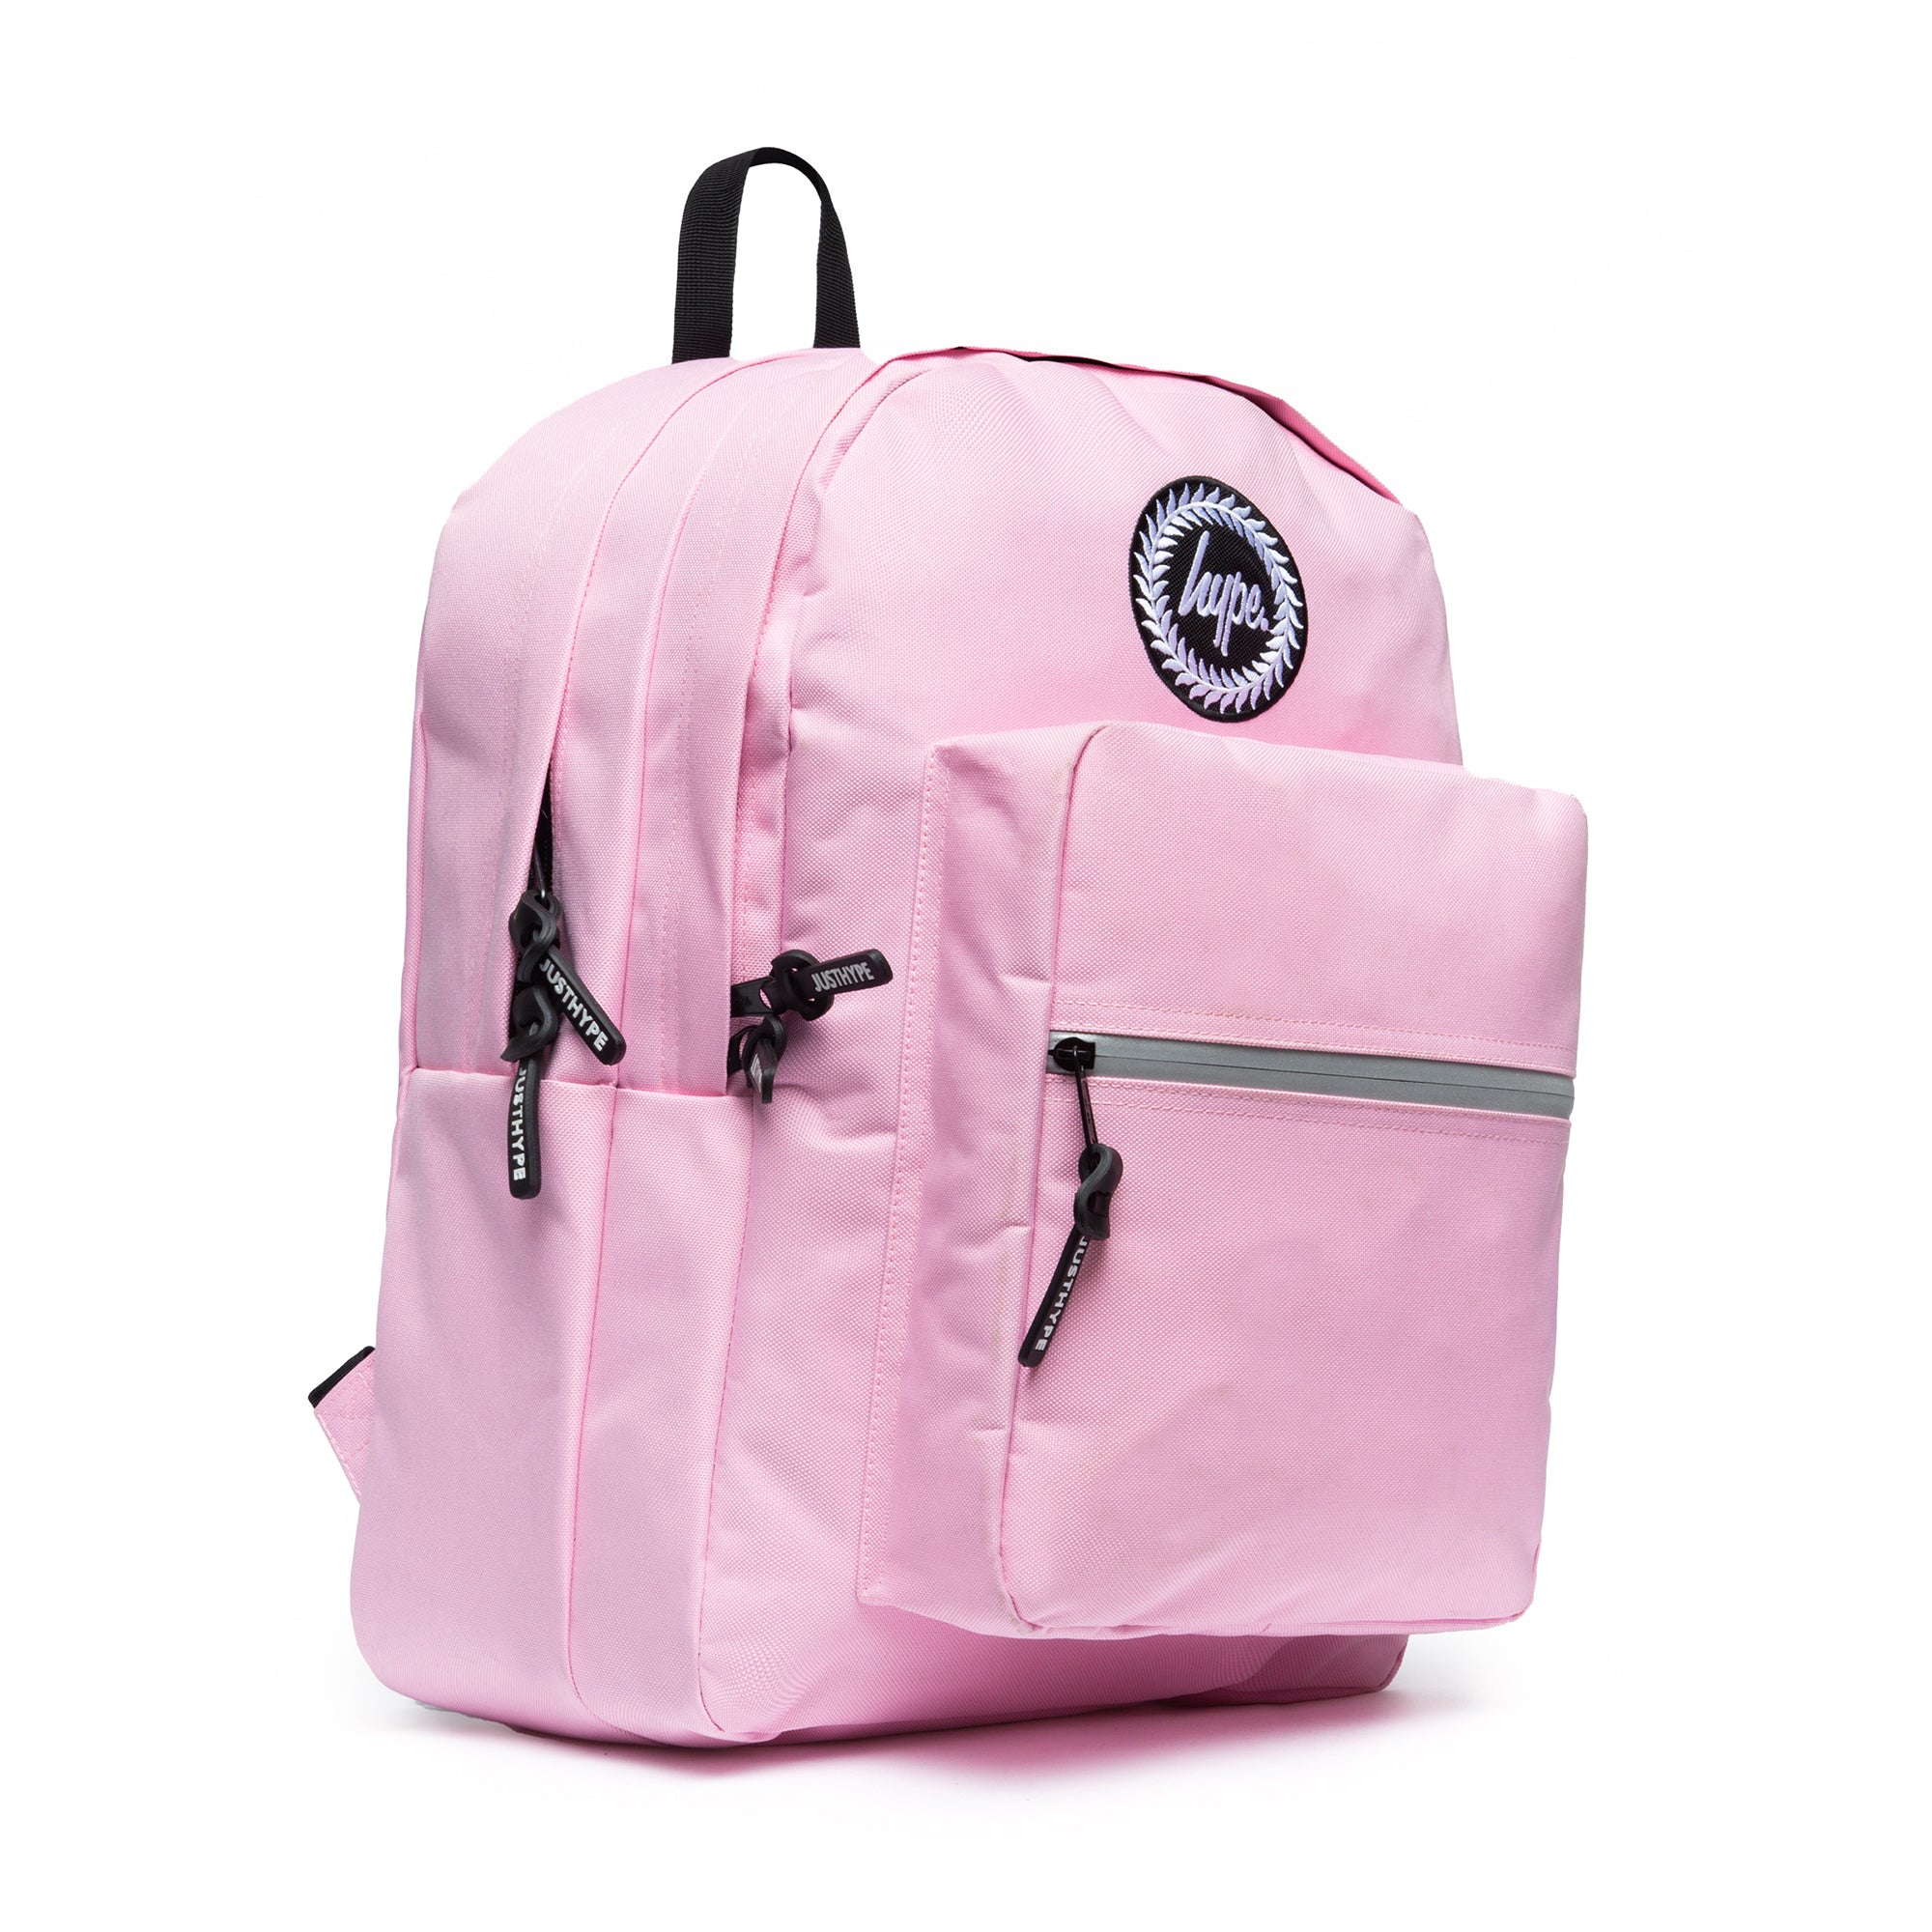 Utility Crest Backpack-Backpack-Hype-Pink-SchoolBagsAndStuff